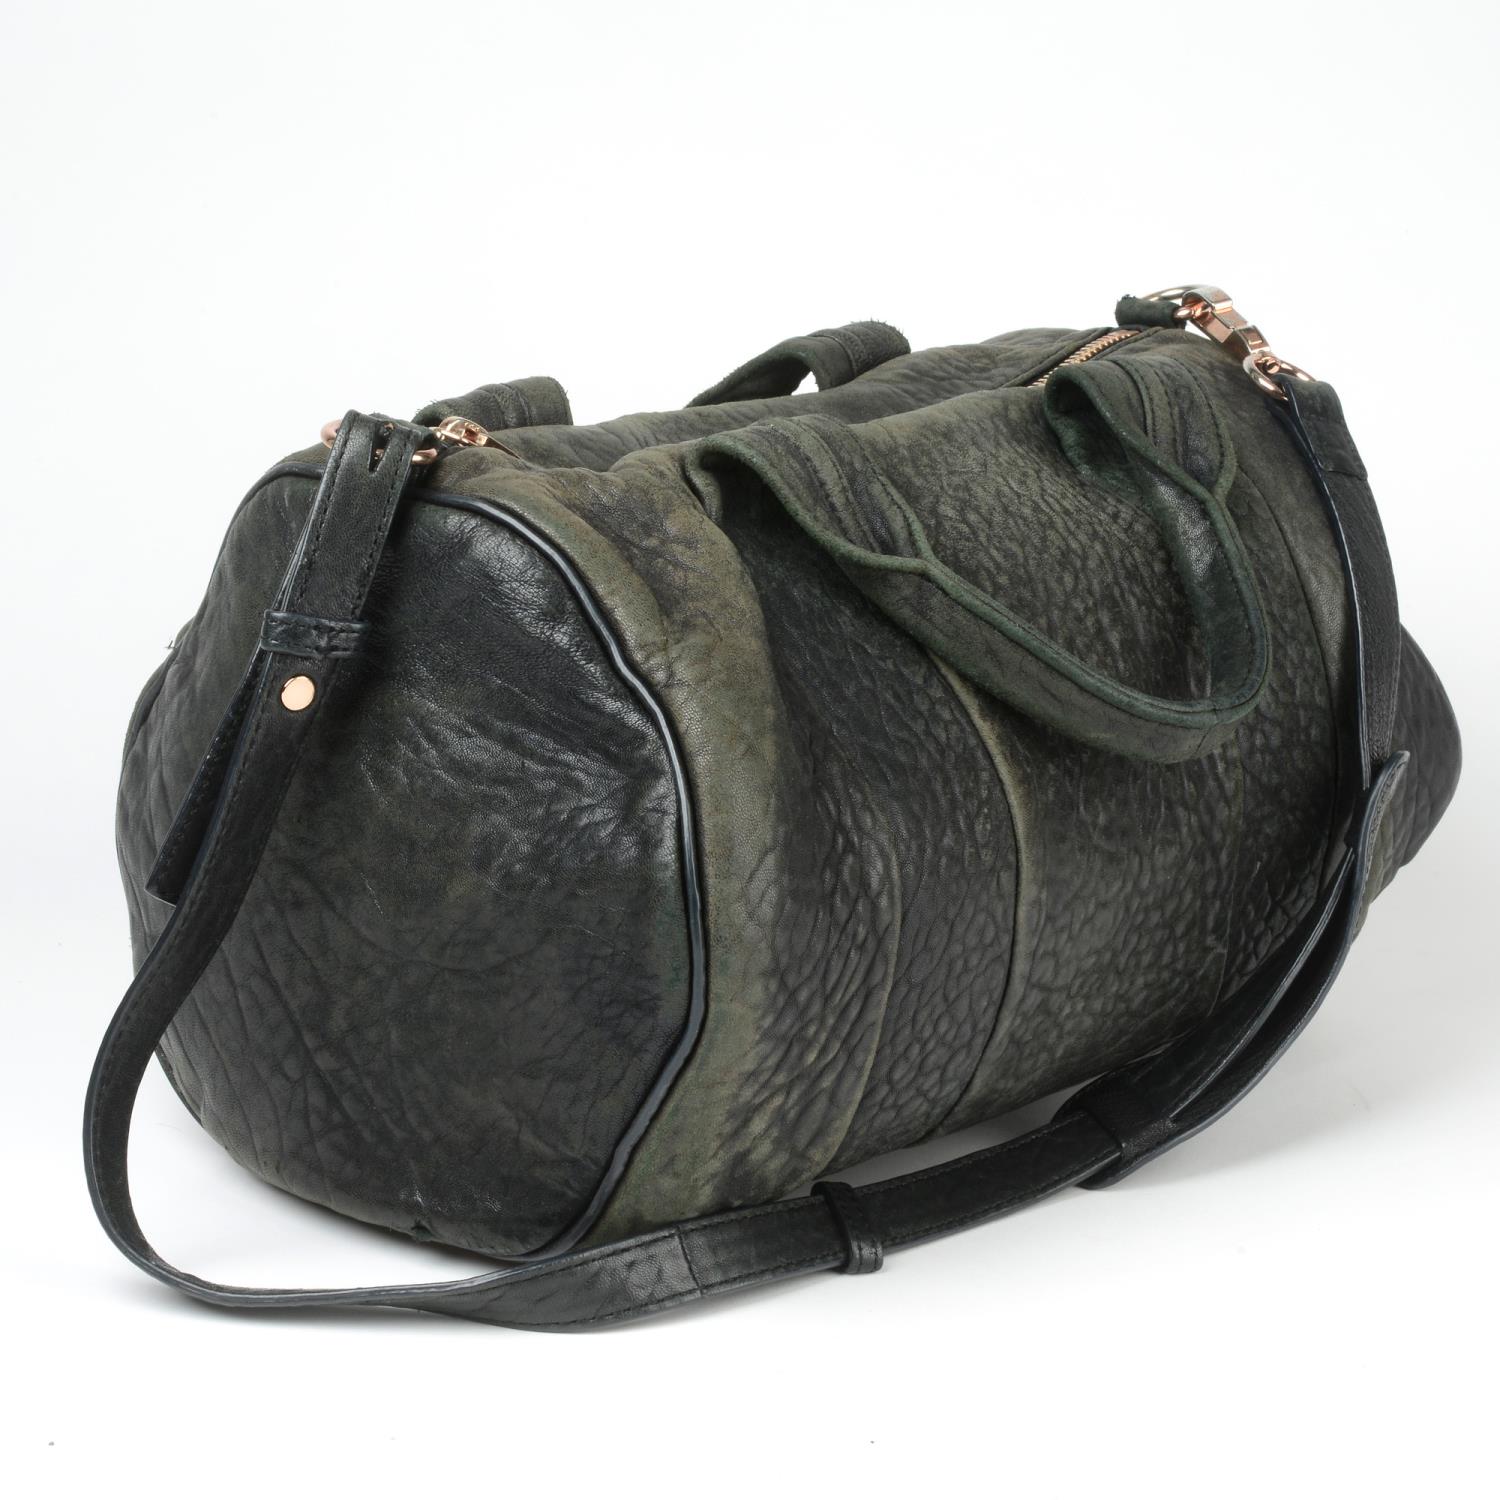 ALEXANDER WANG - a Rocco leather handbag. - Image 2 of 5